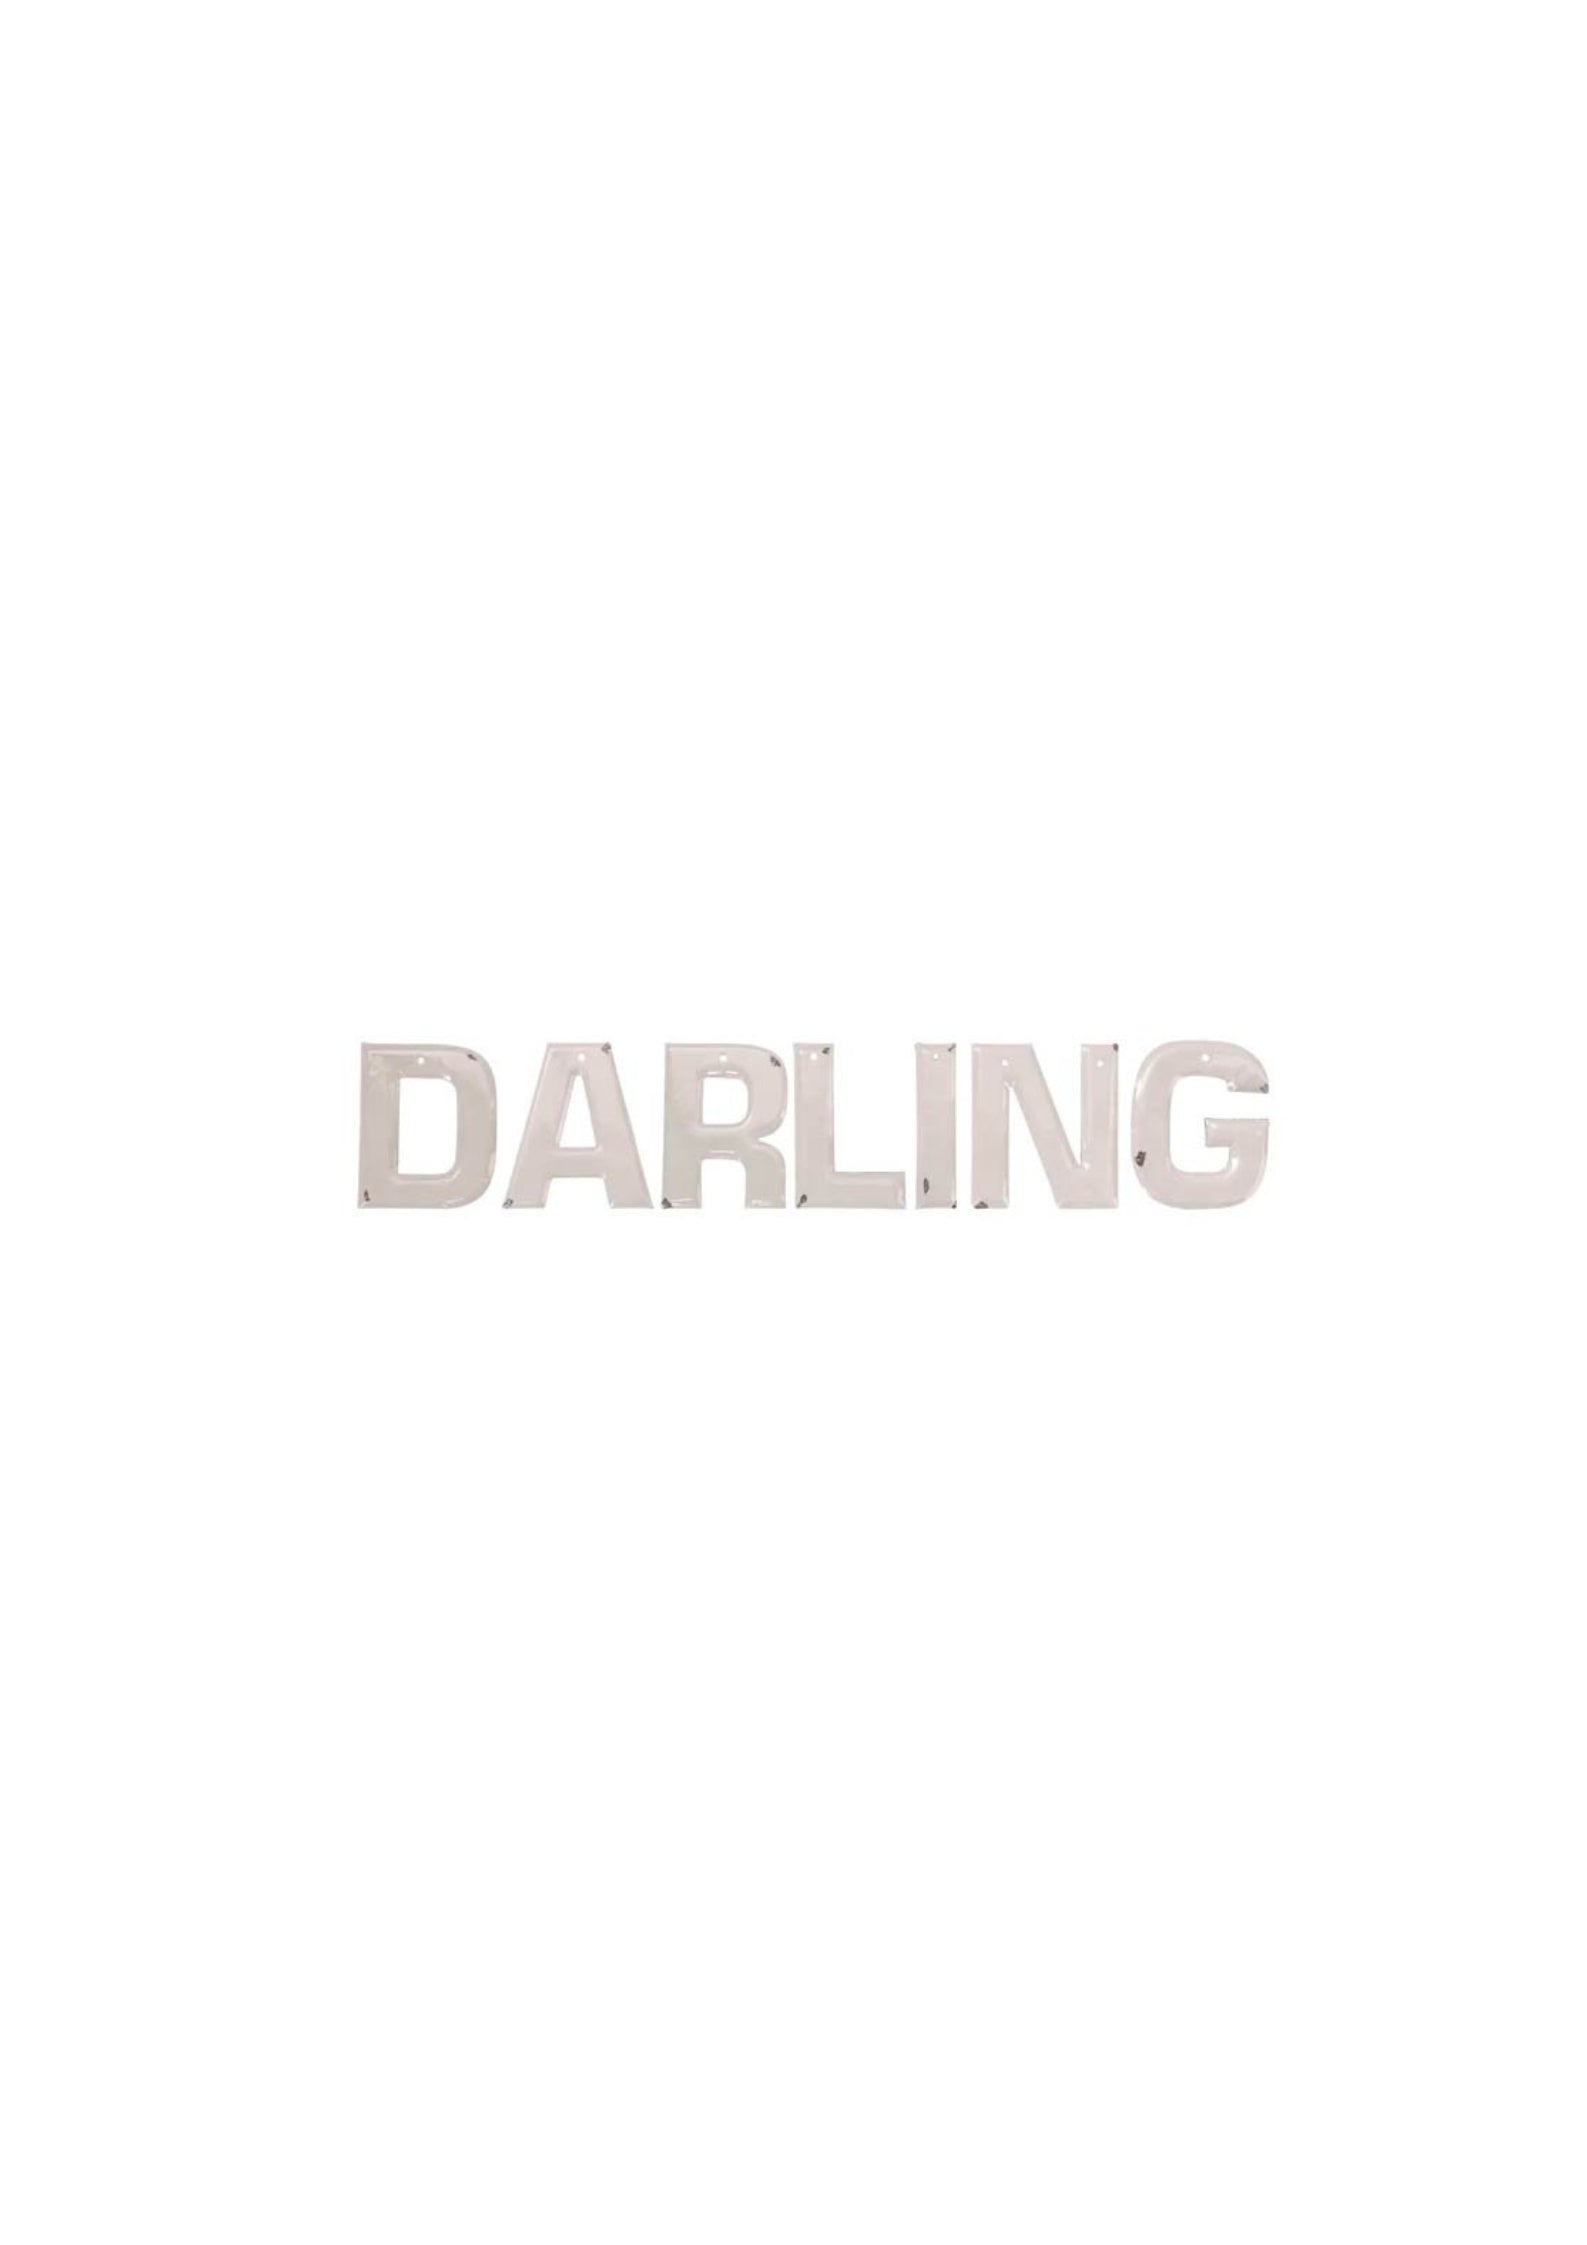 Enamel letters "Darling"